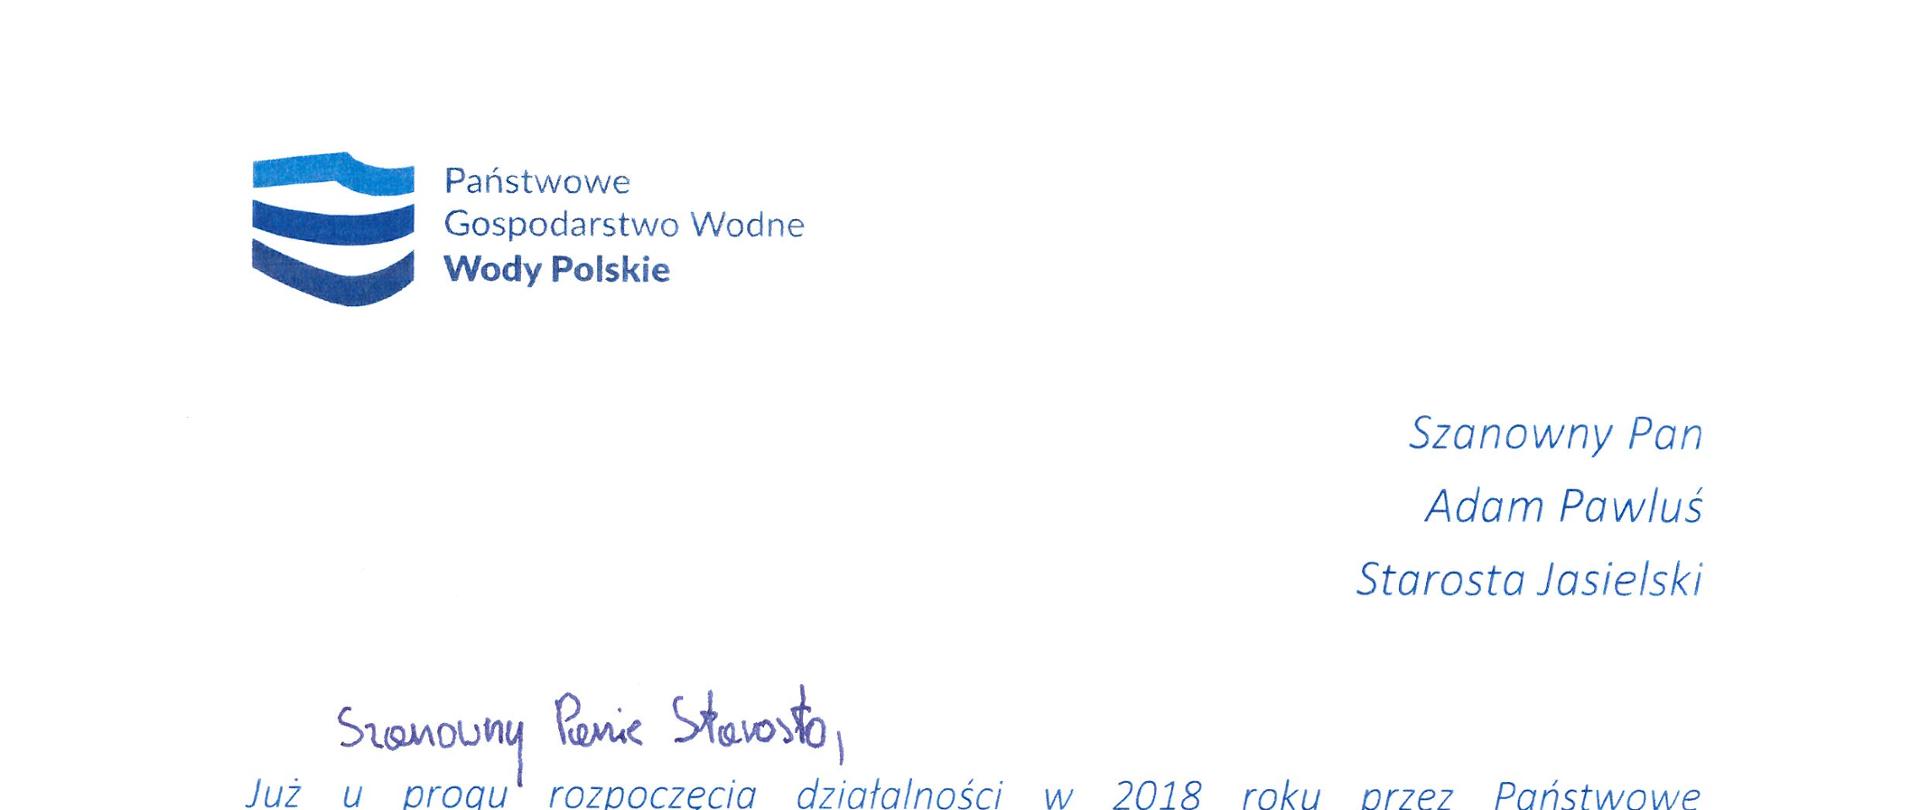 Życzenia bożonarodzeniowe - Państwowe Gospodarstwo Wodne Wody Polskie. Zarząd Zlewni w Jaśle